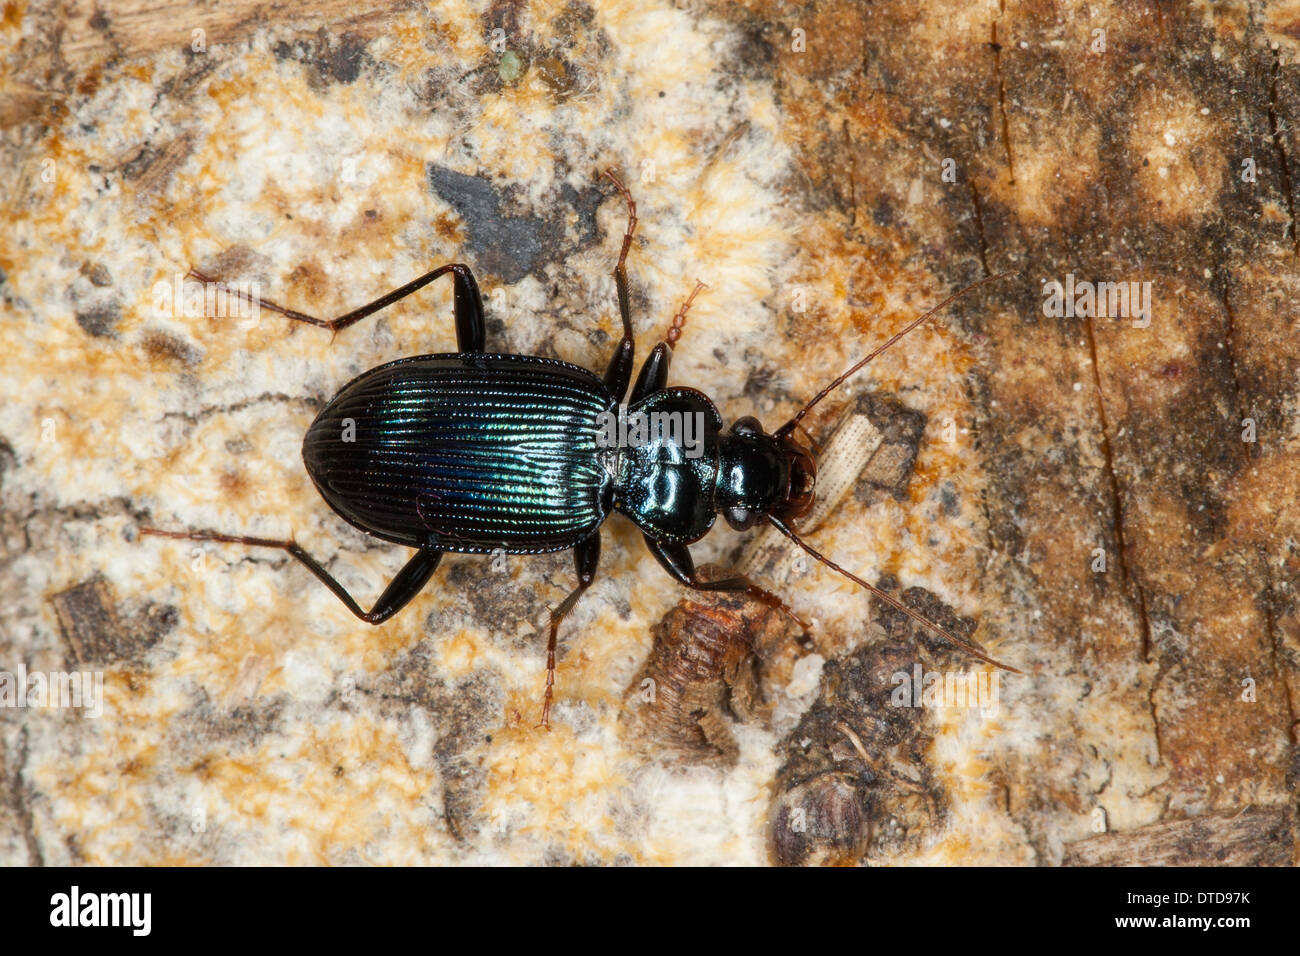 Ground beetle, Blauer Bartläufer, Blauer Dornbart, Laufkäfer, Leistus spinibarbis, Pogonophorus spinibarbis Stock Photo